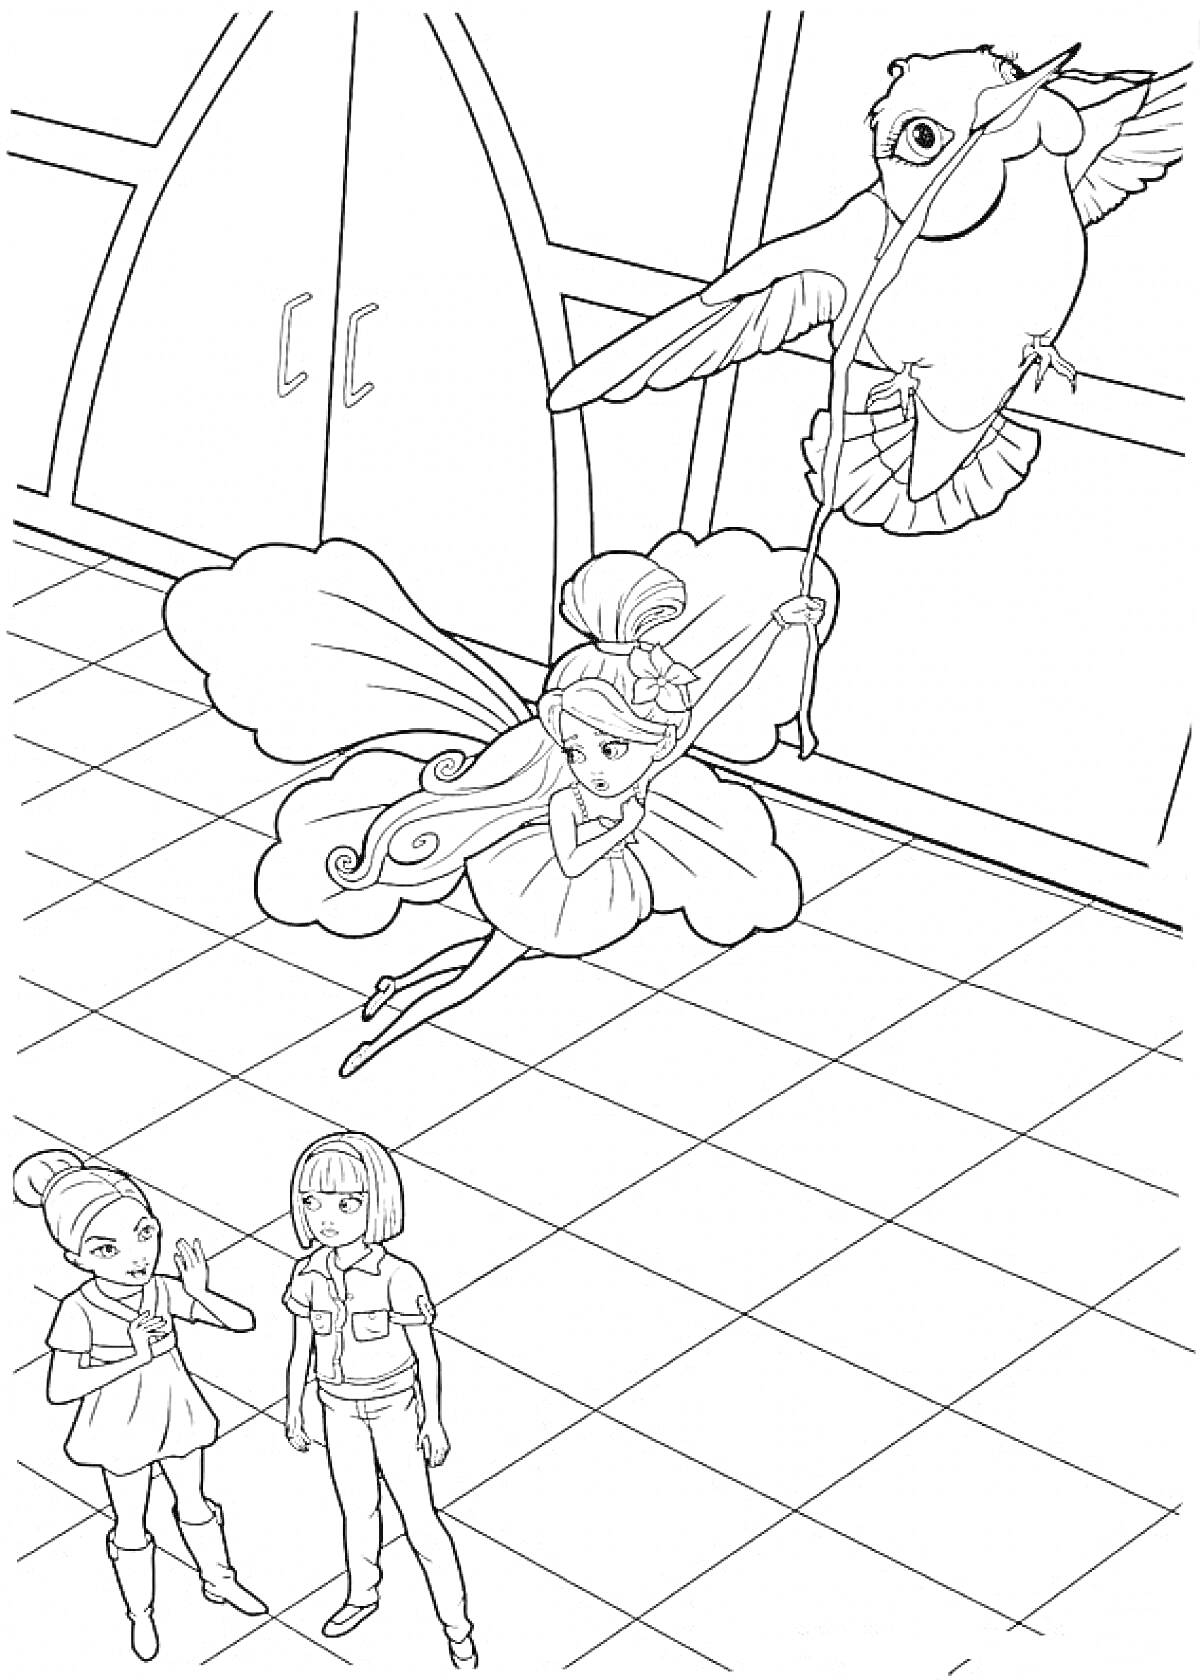 Раскраска Барби Дюймовочка, летающая фея с большими крыльями, держащаяся за ножку птицы, две девушки на земле, одежда с короткими рукавами, плиточный пол.